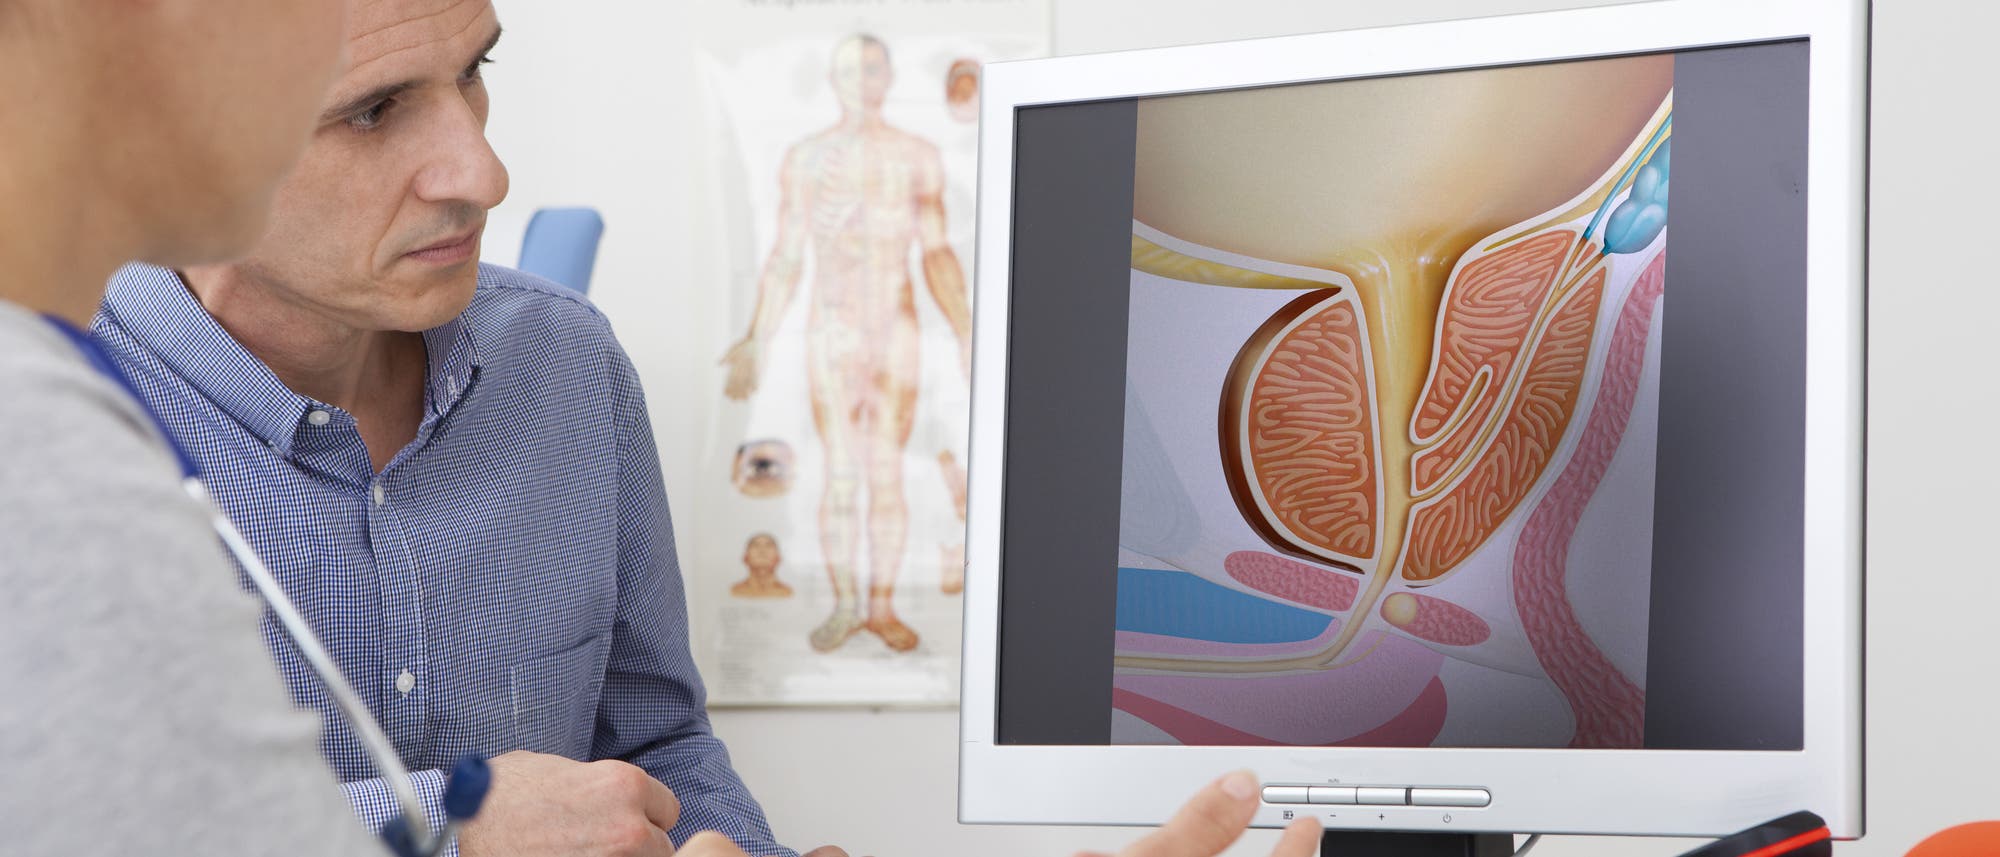 Eine Ärztin erklärt einem Patienten die Prostata anhand einer Illustration.